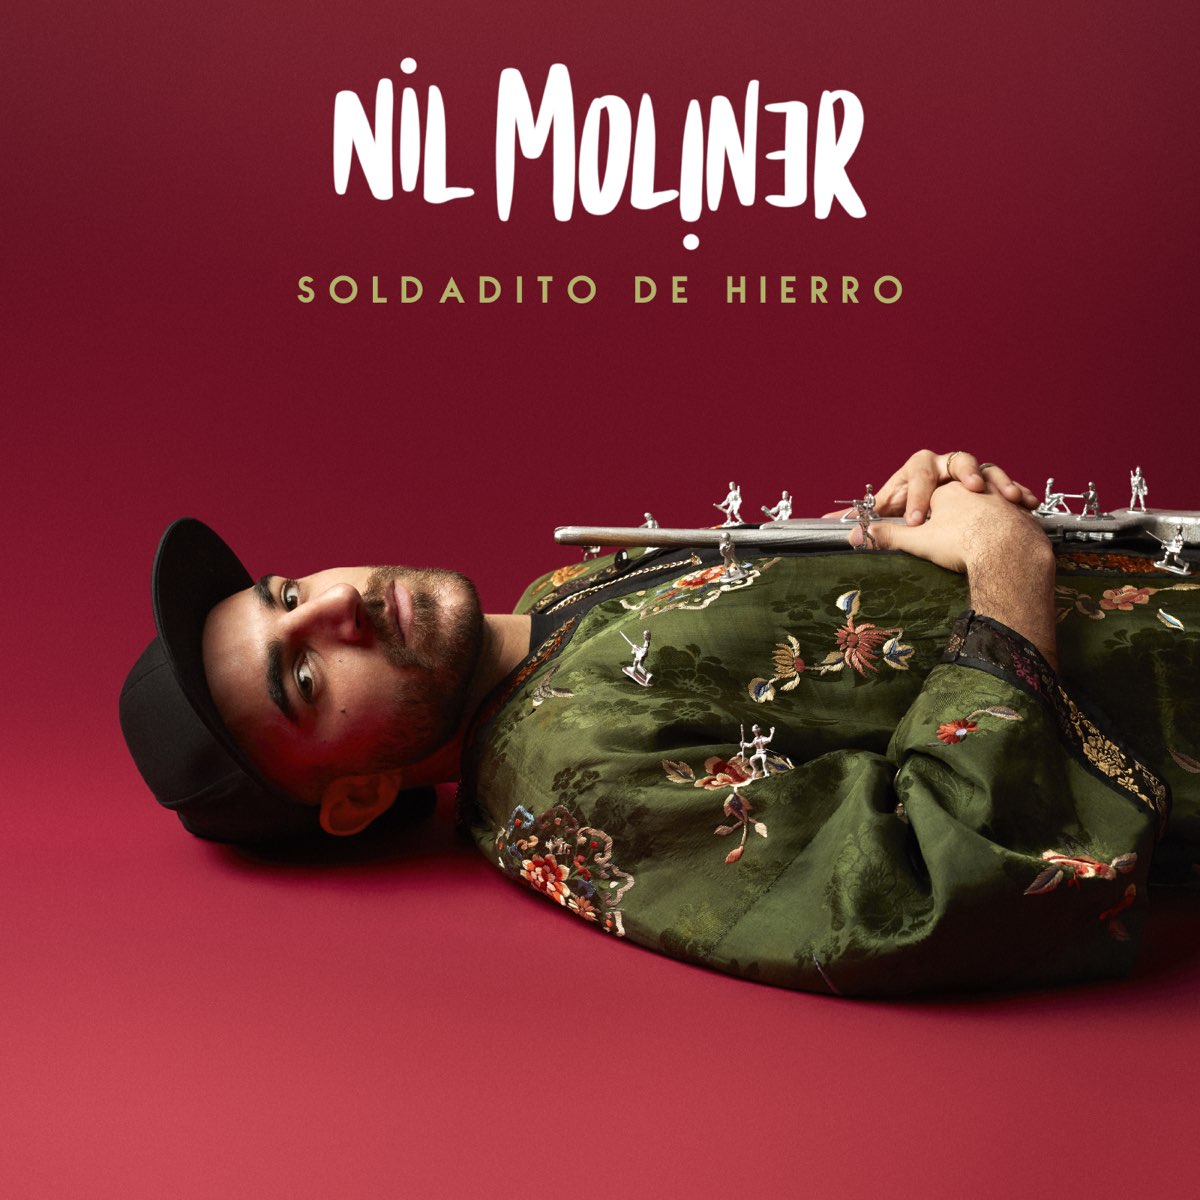 Soldadito de hierro - Single by Nil Moliner on Apple Music